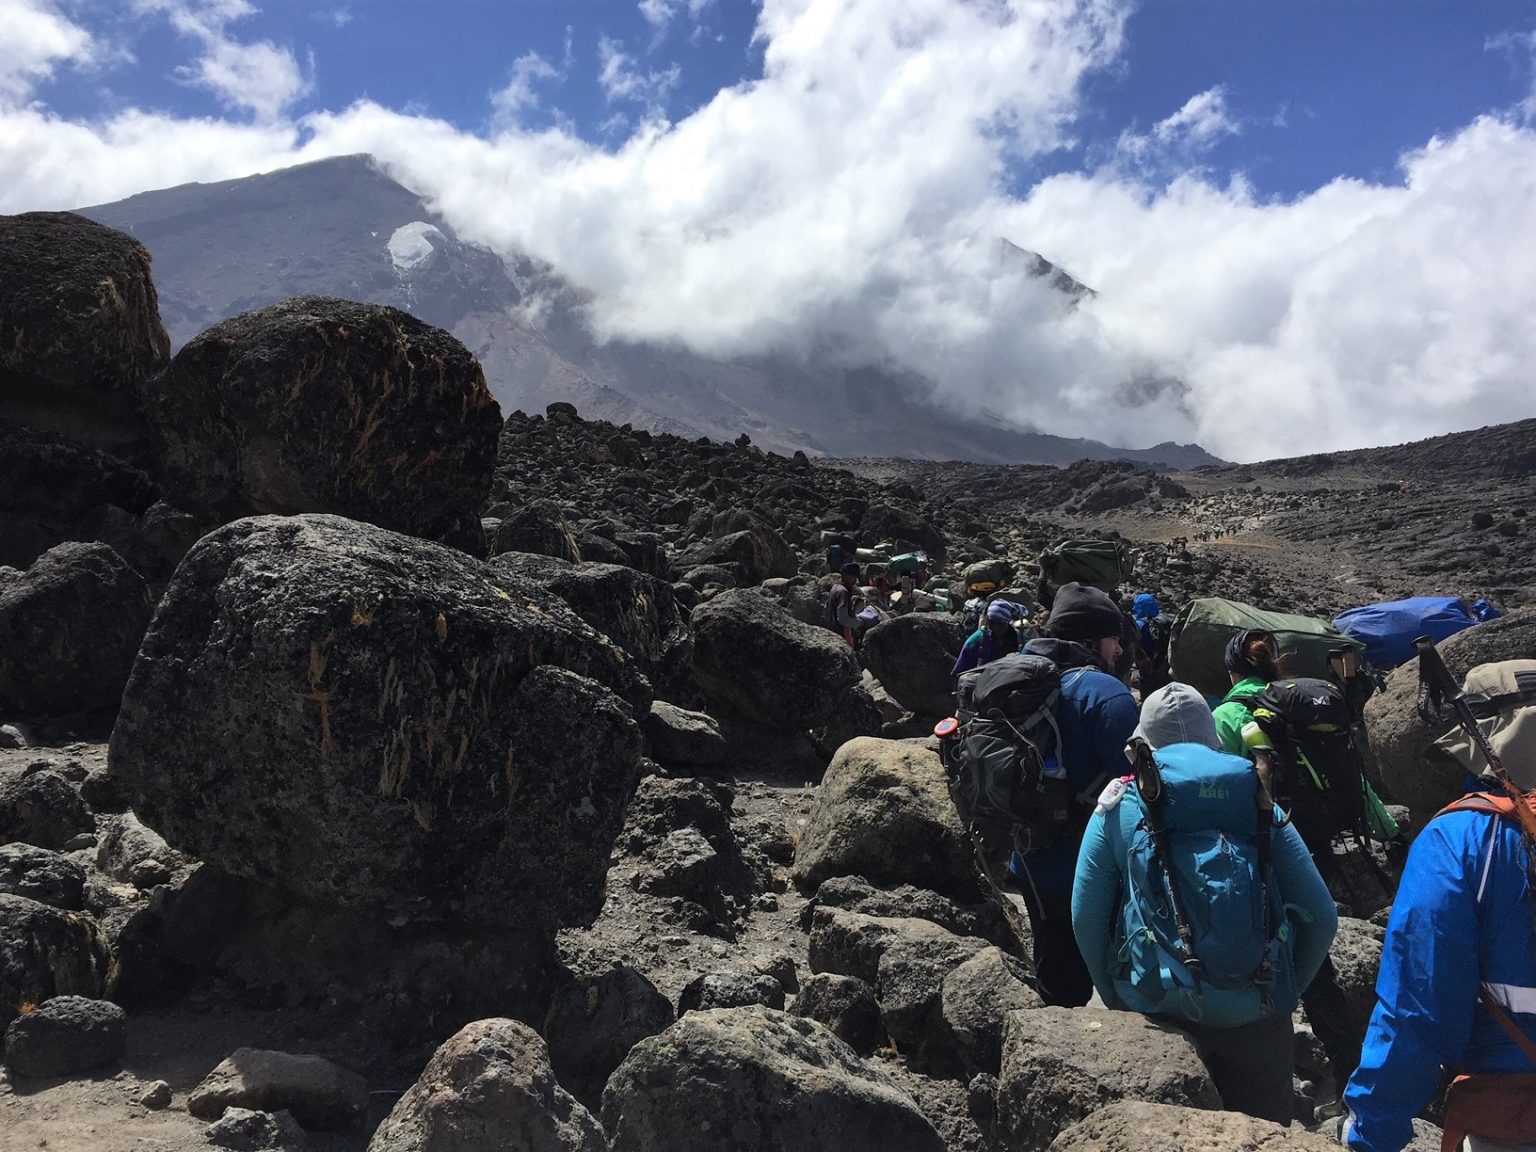 Climbing Mount Kilimanjaro in Tanzania Africa